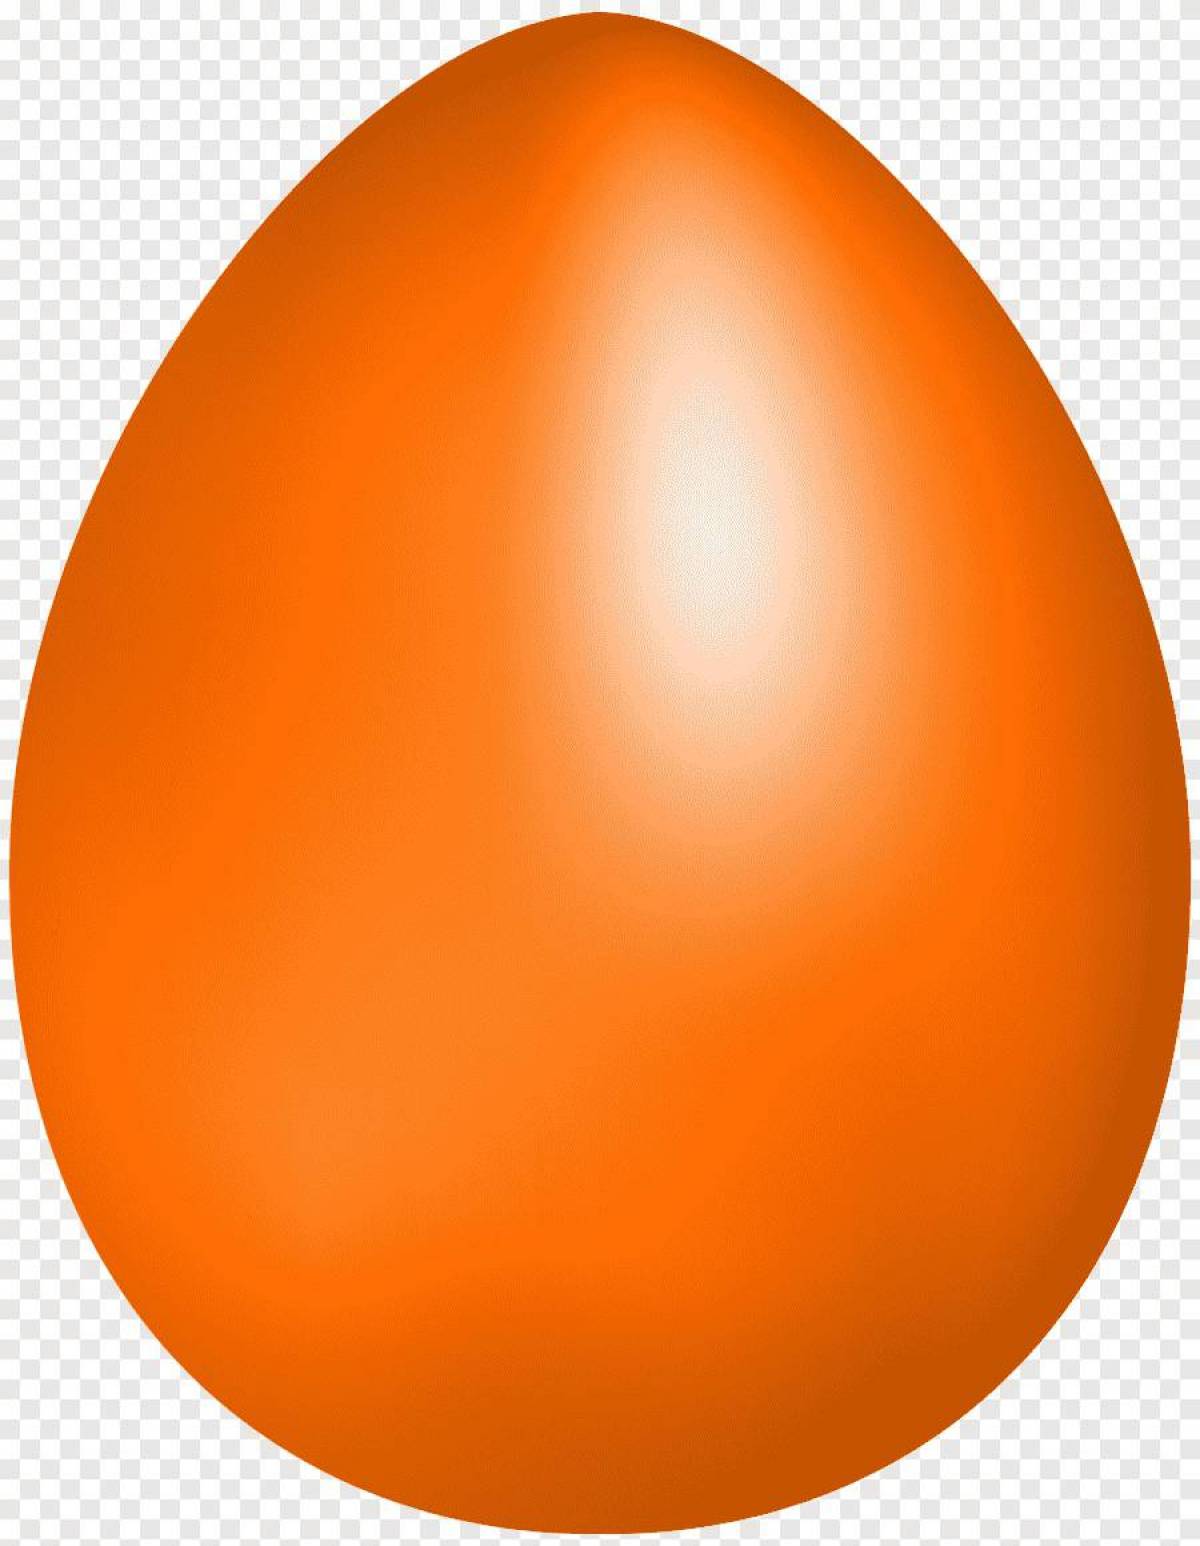 Яйцо картинка. Оранжевое яйцо. Яйцо мультяшное. Яйцо для детей. Яйцо без фона.